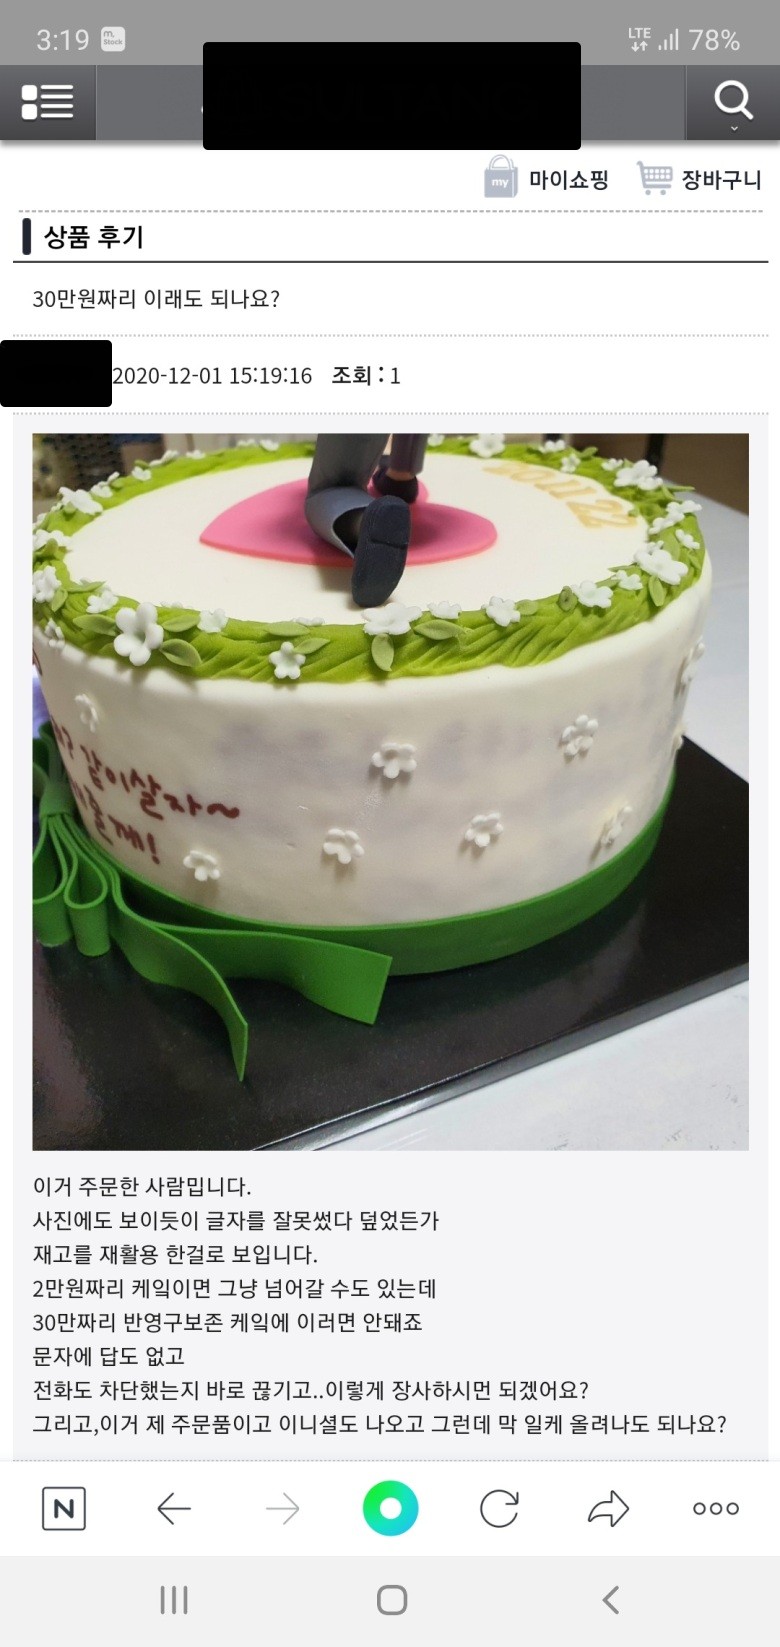 30만원짜리 케이크 수준 - 꾸르